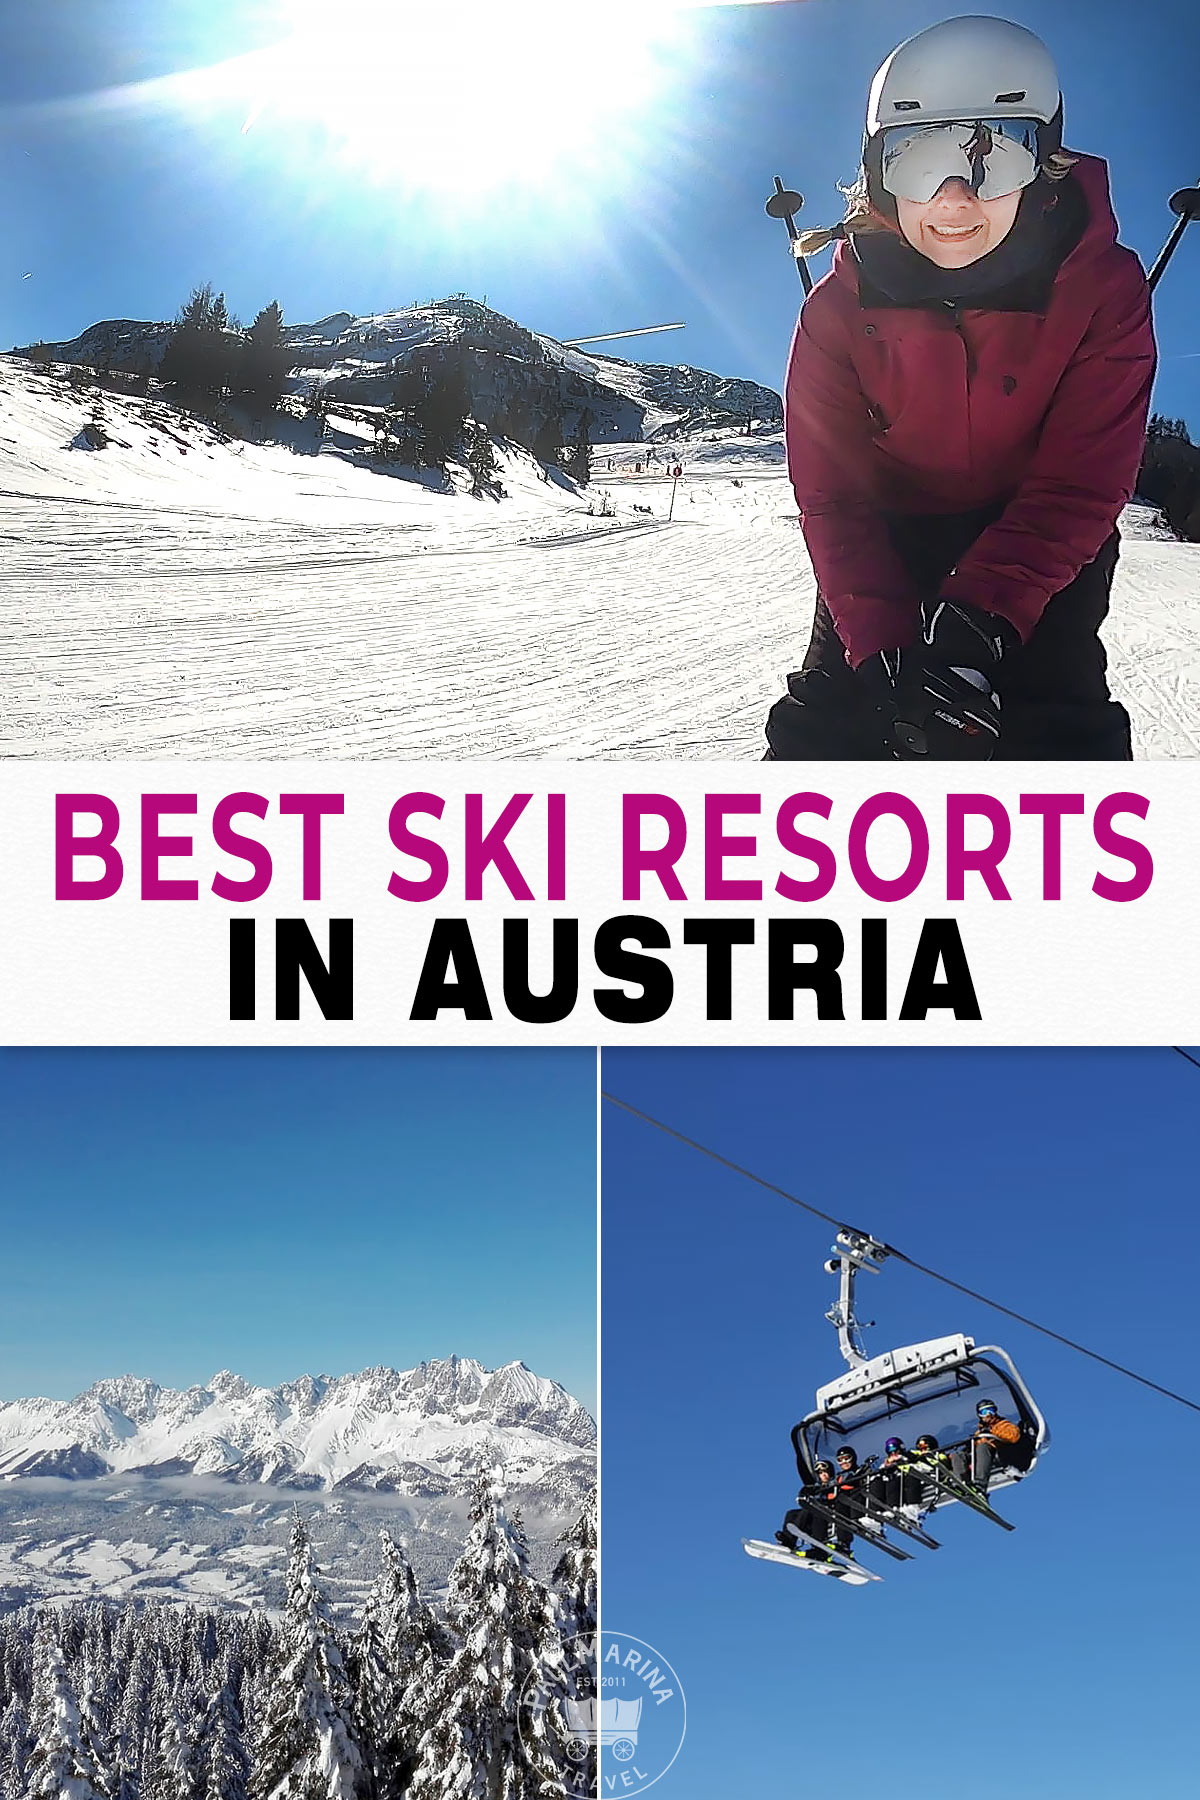 9 Best Ski Resorts in Austria pin image